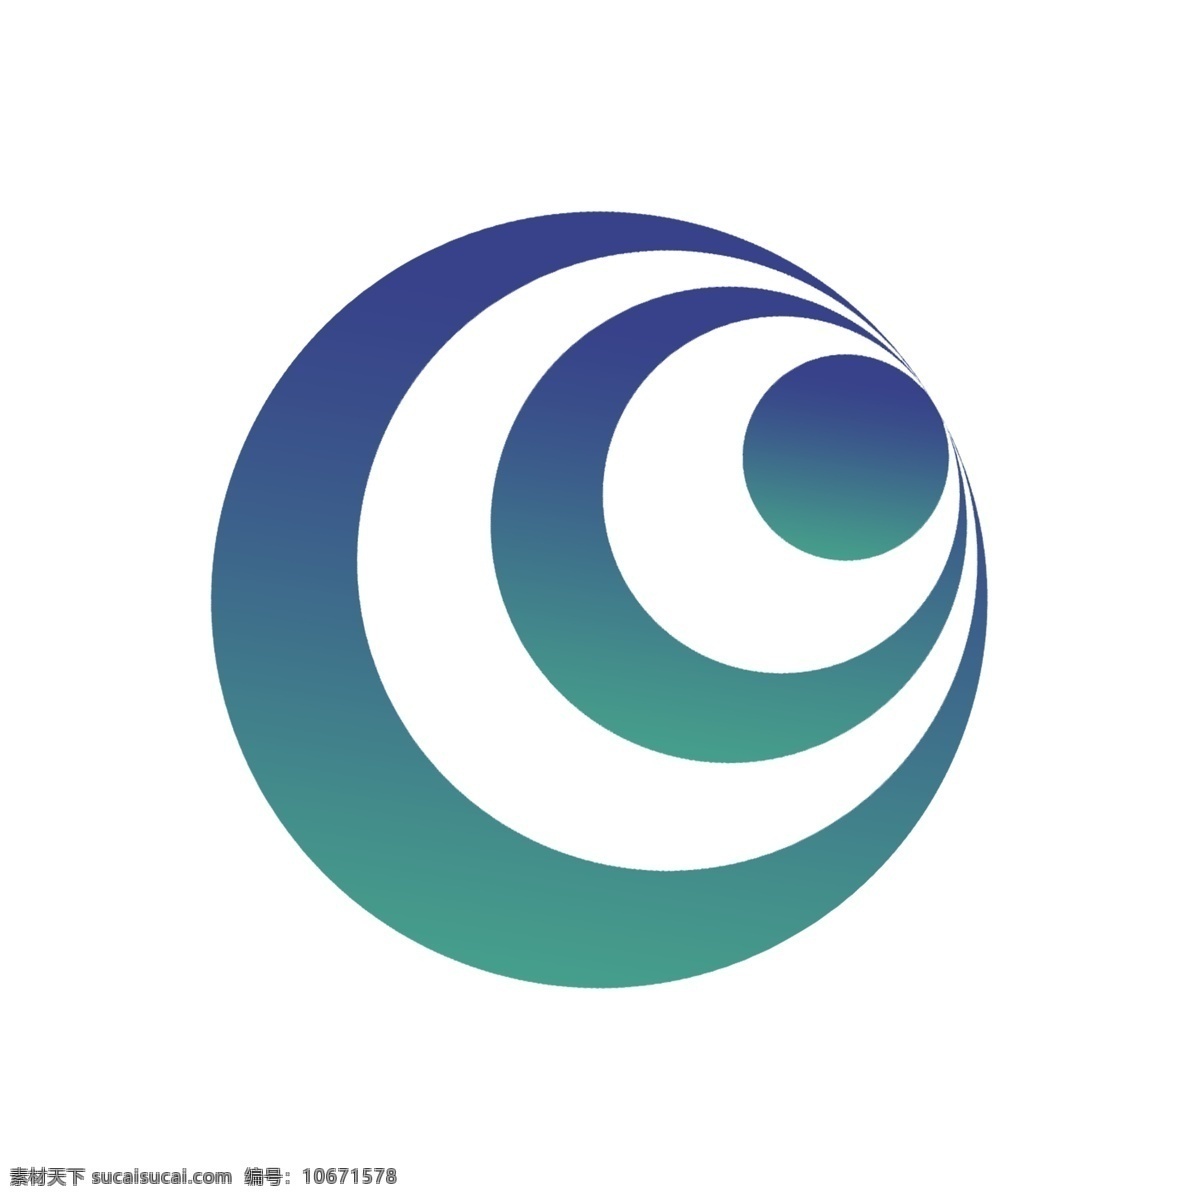 原创 未来 环球 行业 企业 logo 标识设计 插画风 发展 图标元素